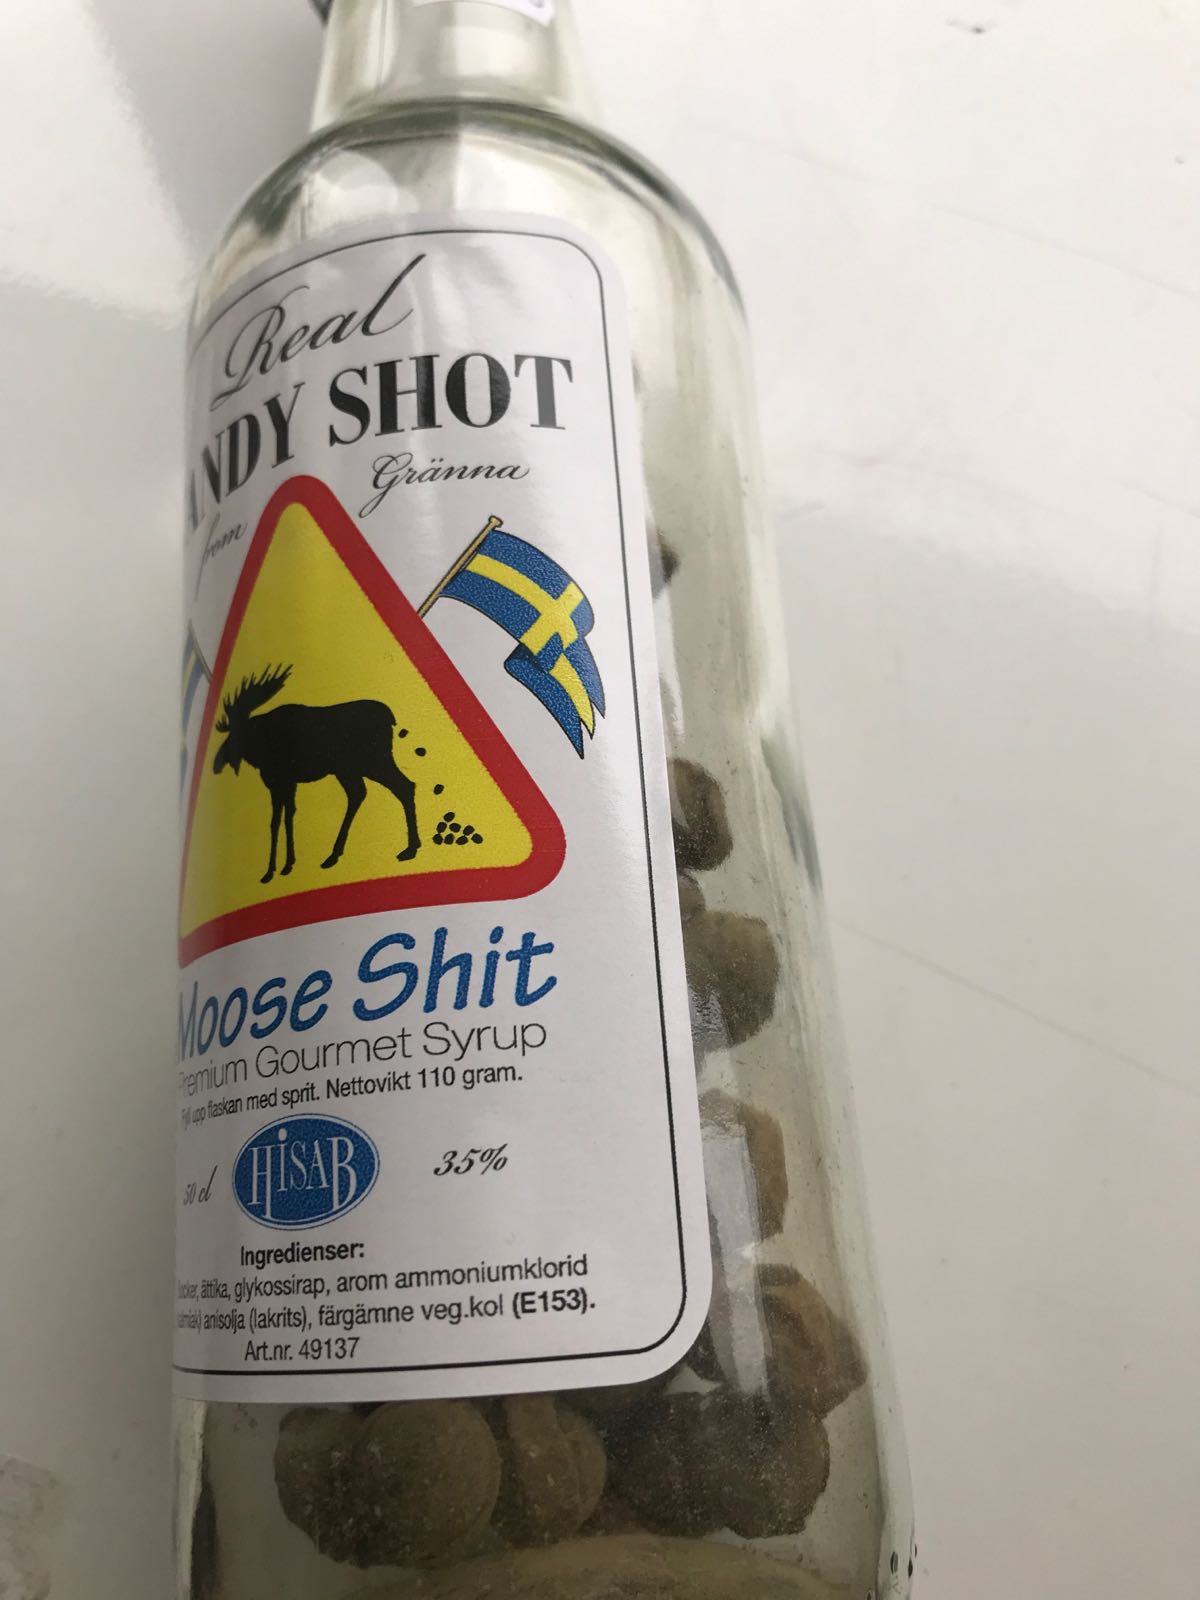 Flaska candyshot ”Moose shit”